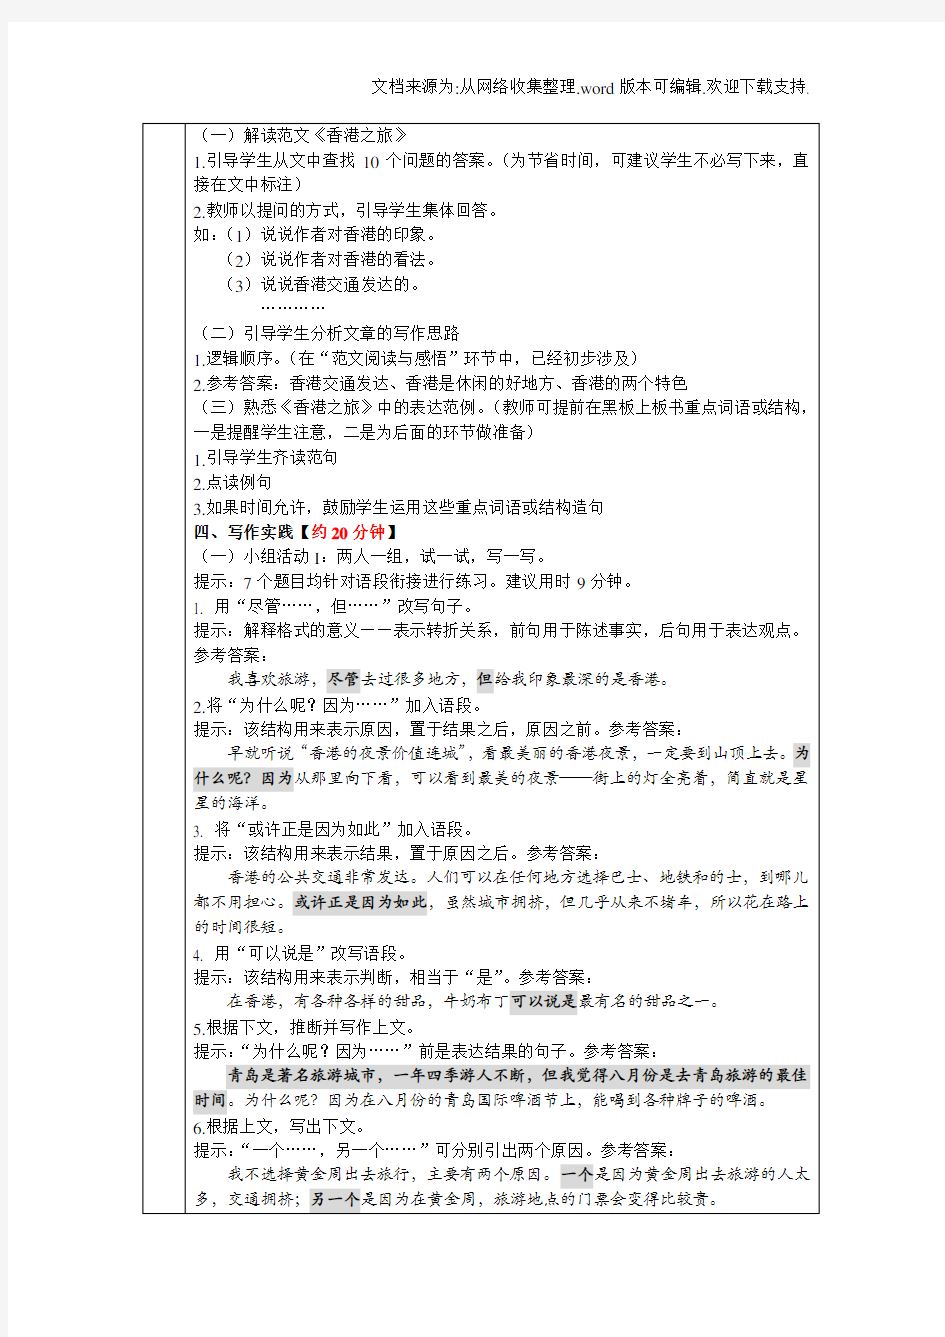 发展汉语(第二版)中级写作II第17课香港之旅